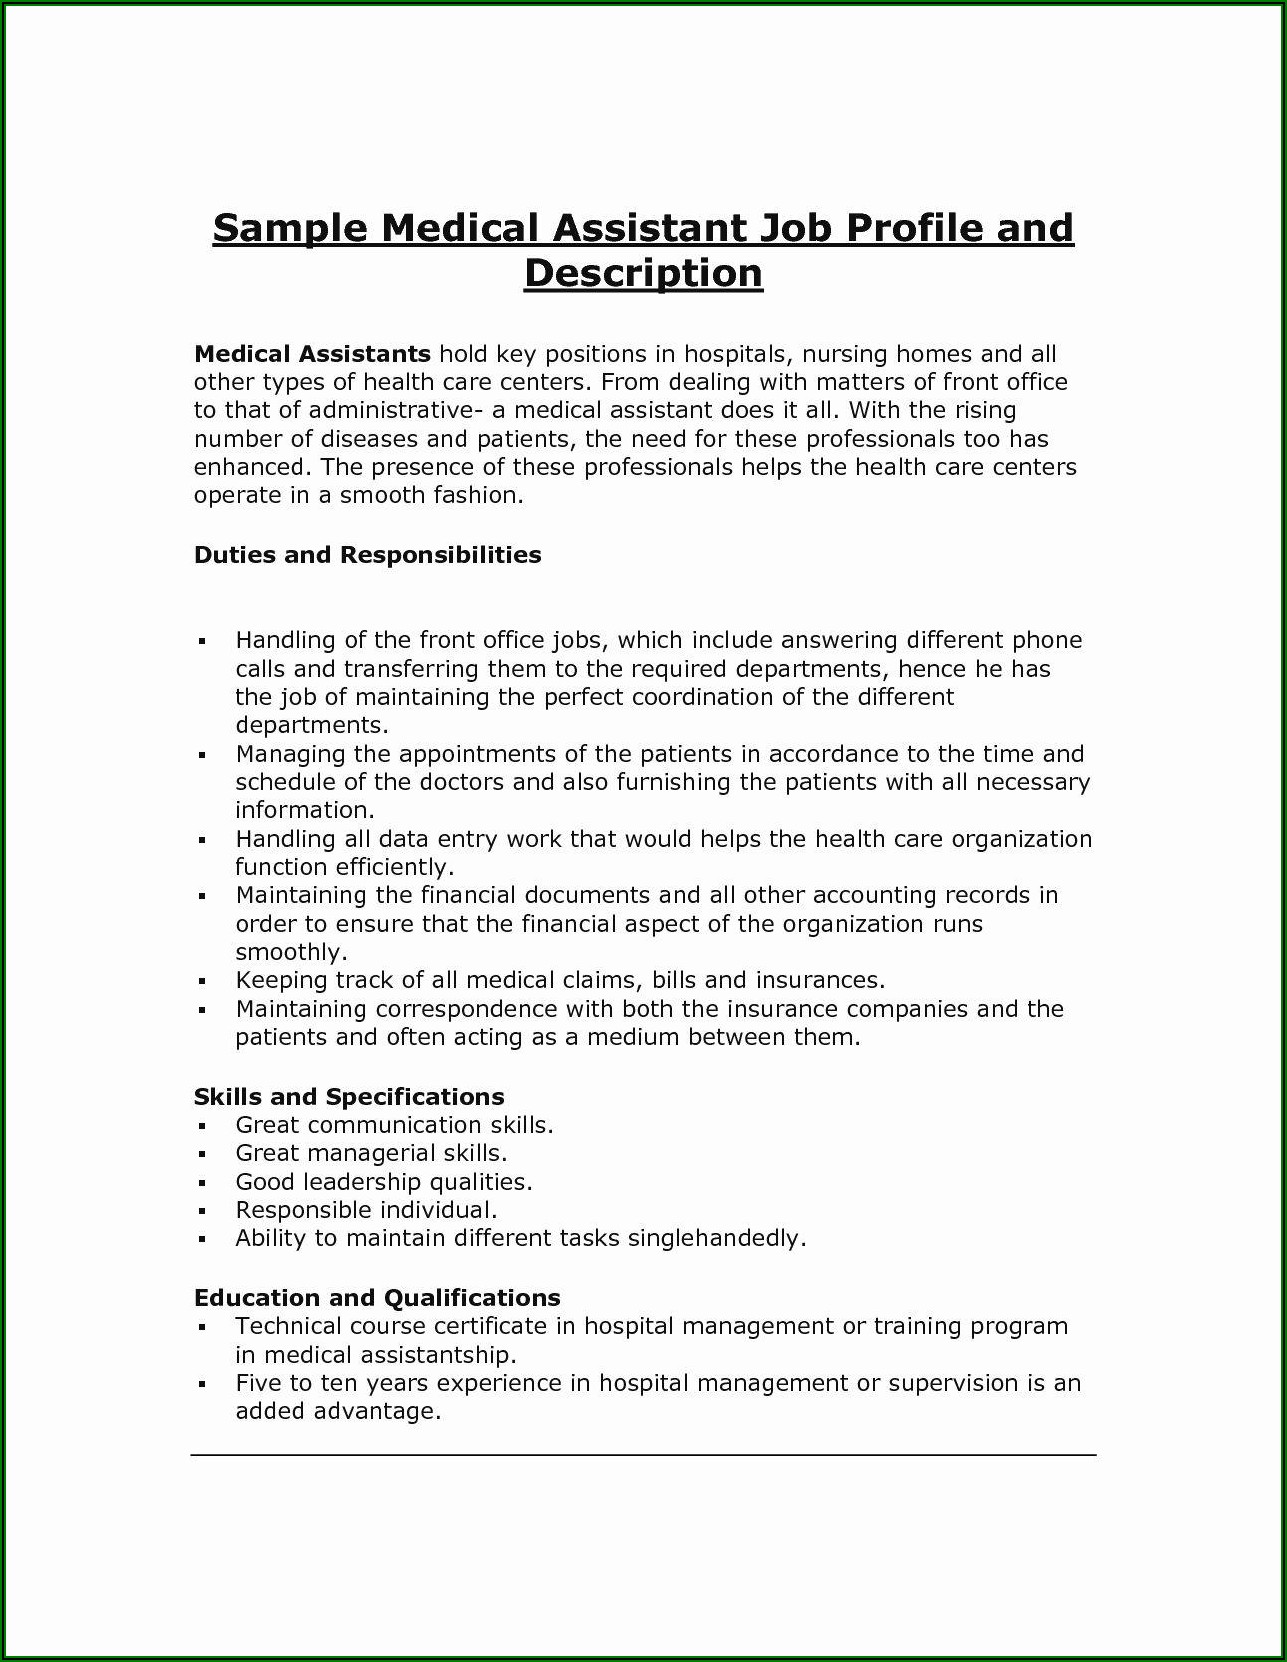 Sample Medical Assistant Job Description For Resume